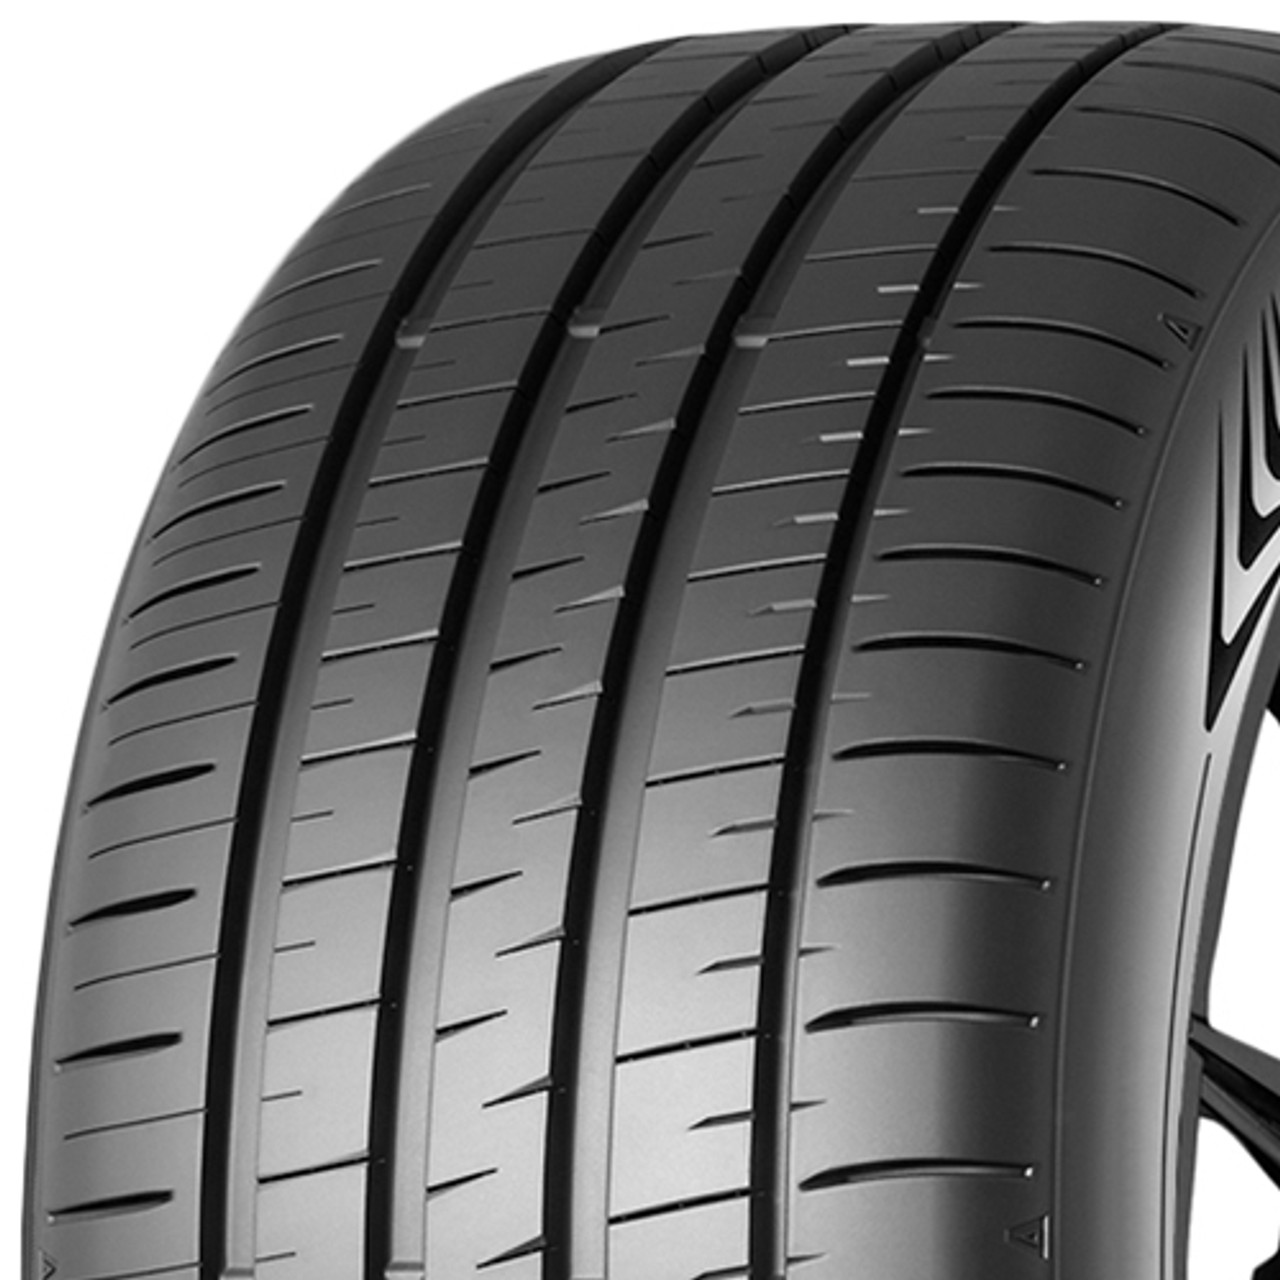 265/35R18 Dunlop Black Wall Sport Tire Maxx 060 97Y - Plus XL SP 352789 ShopCWO